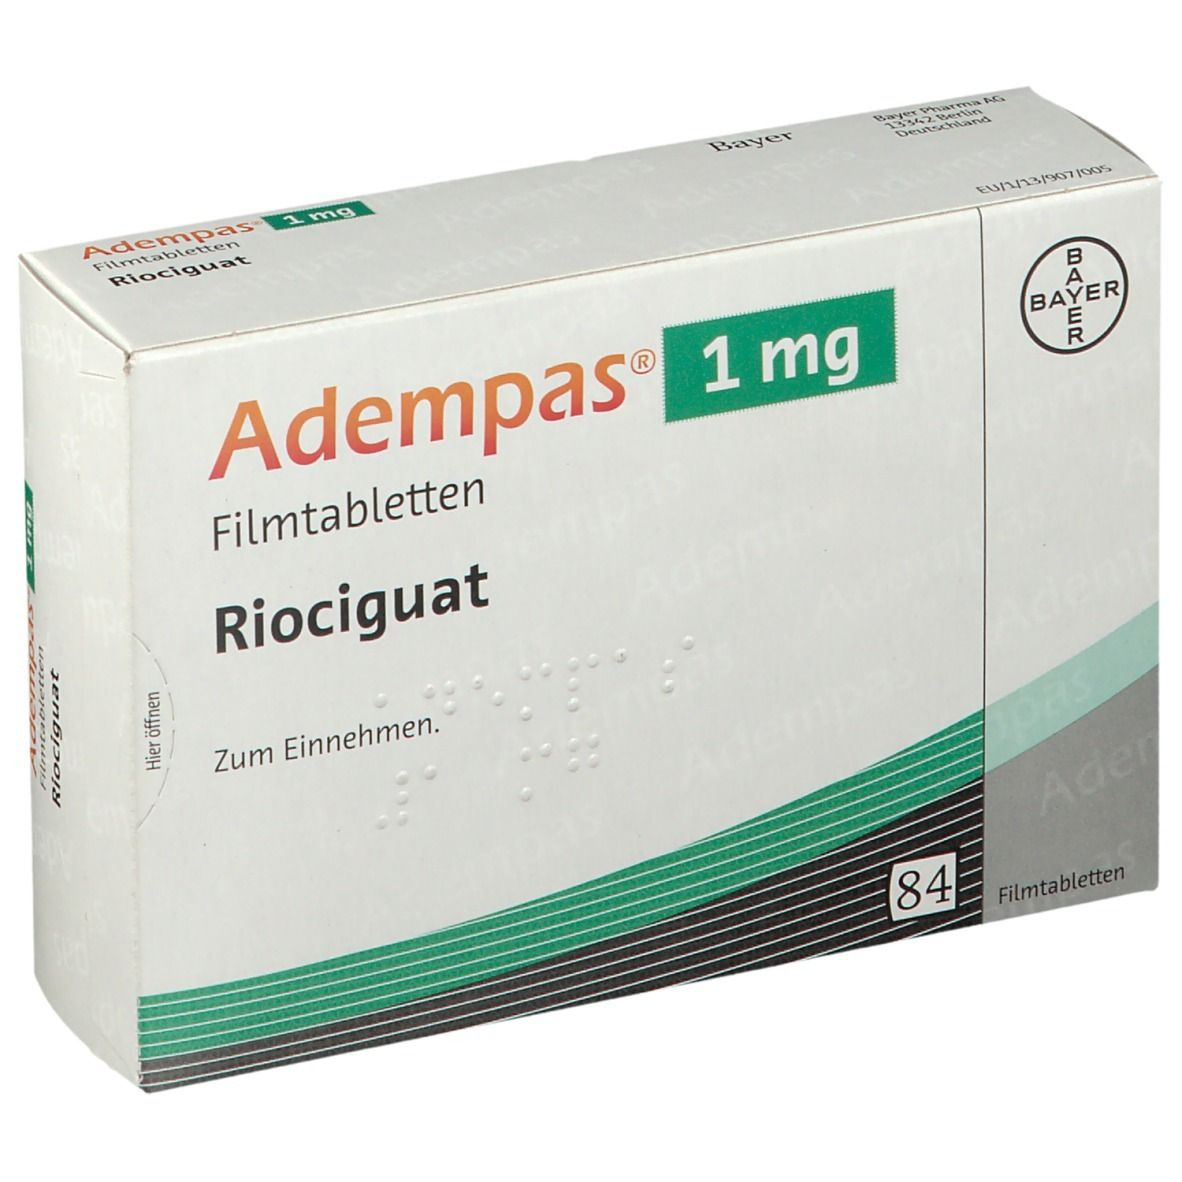 Adempas® 1 mg